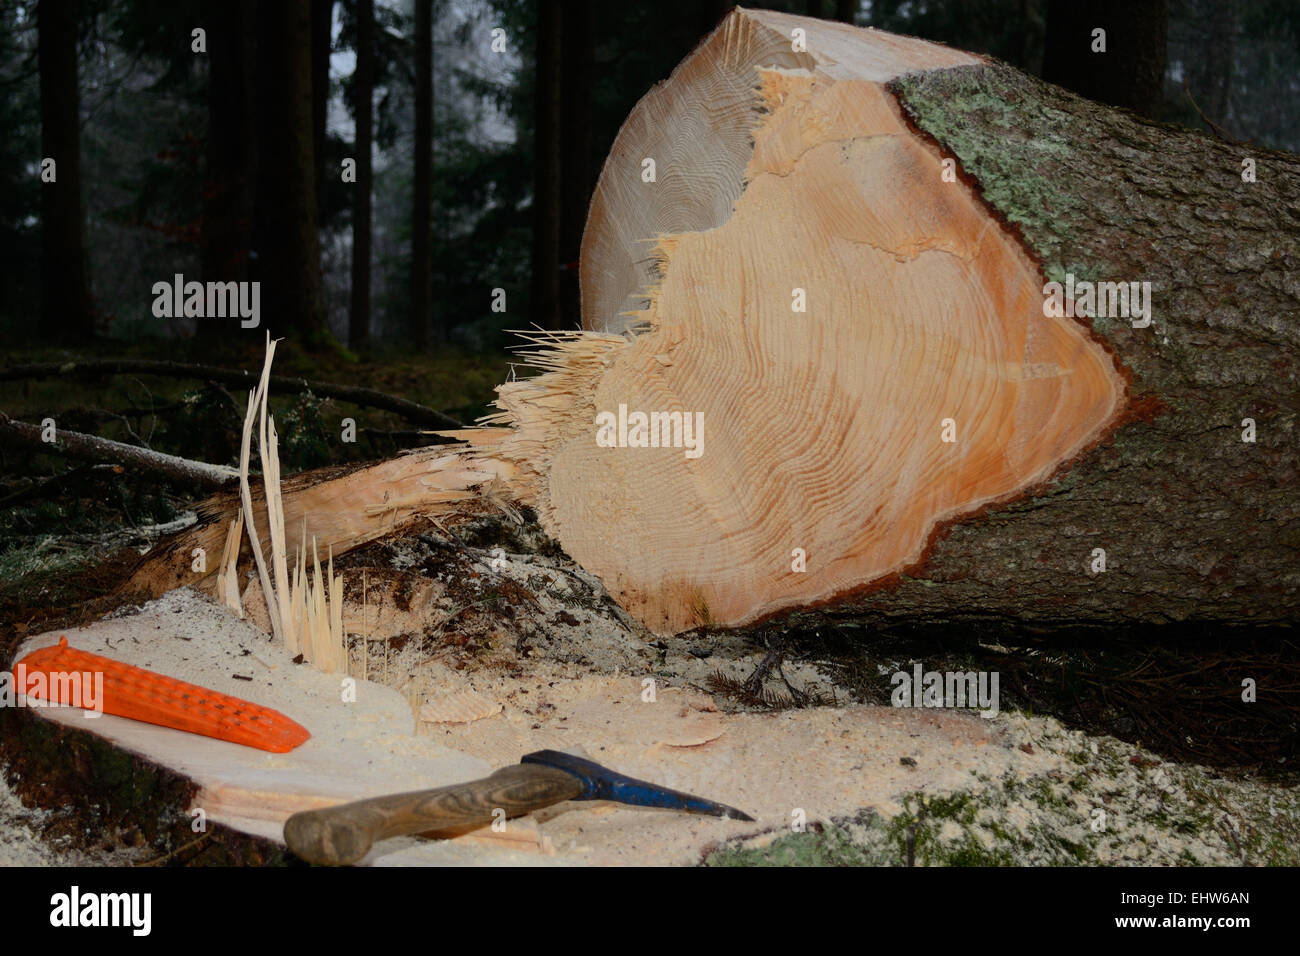 Vize Schnitt Baum und Werkzeug Stockfoto